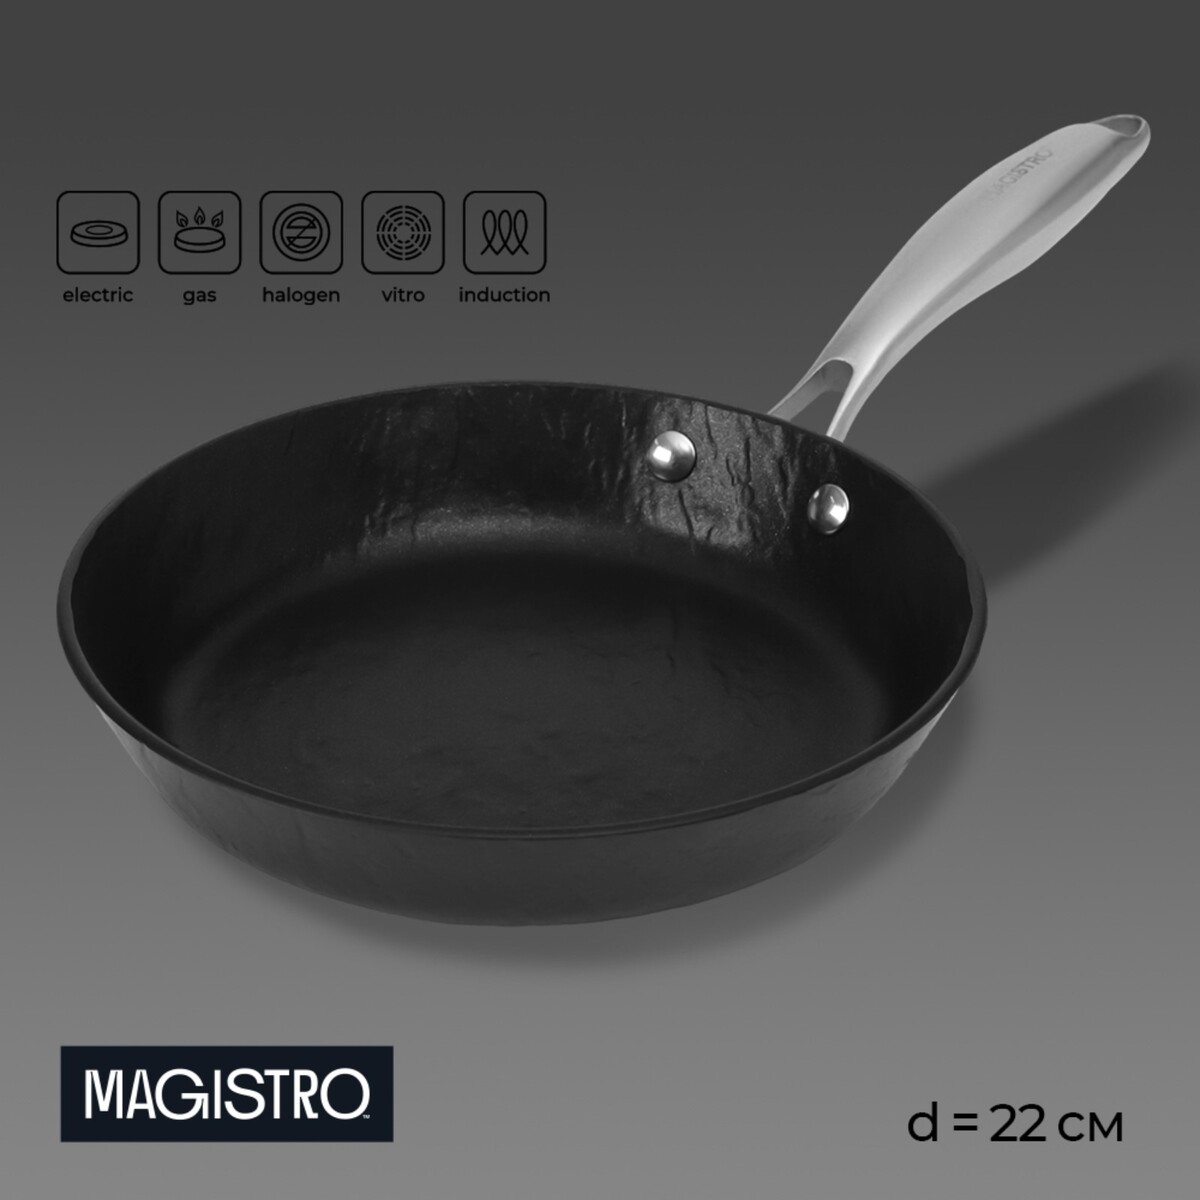 Сковорода magistro rock stone, d=22 см, h=4,3 см, антипригарное покрытие, индукция, цвет черный